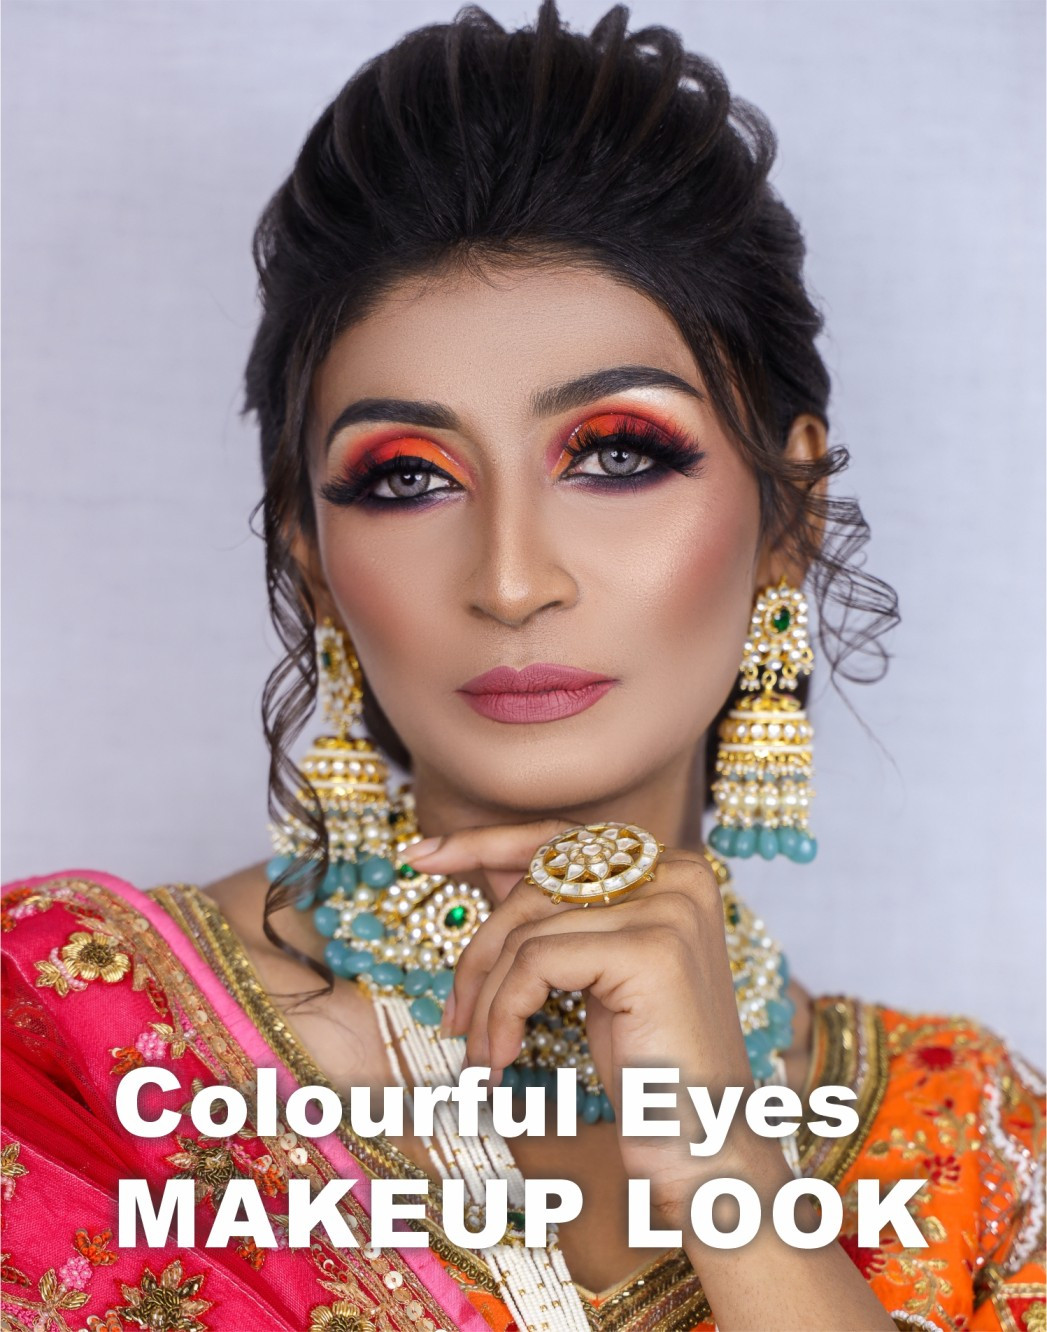 Colourful Eyes Makeup Look - Mkup 004